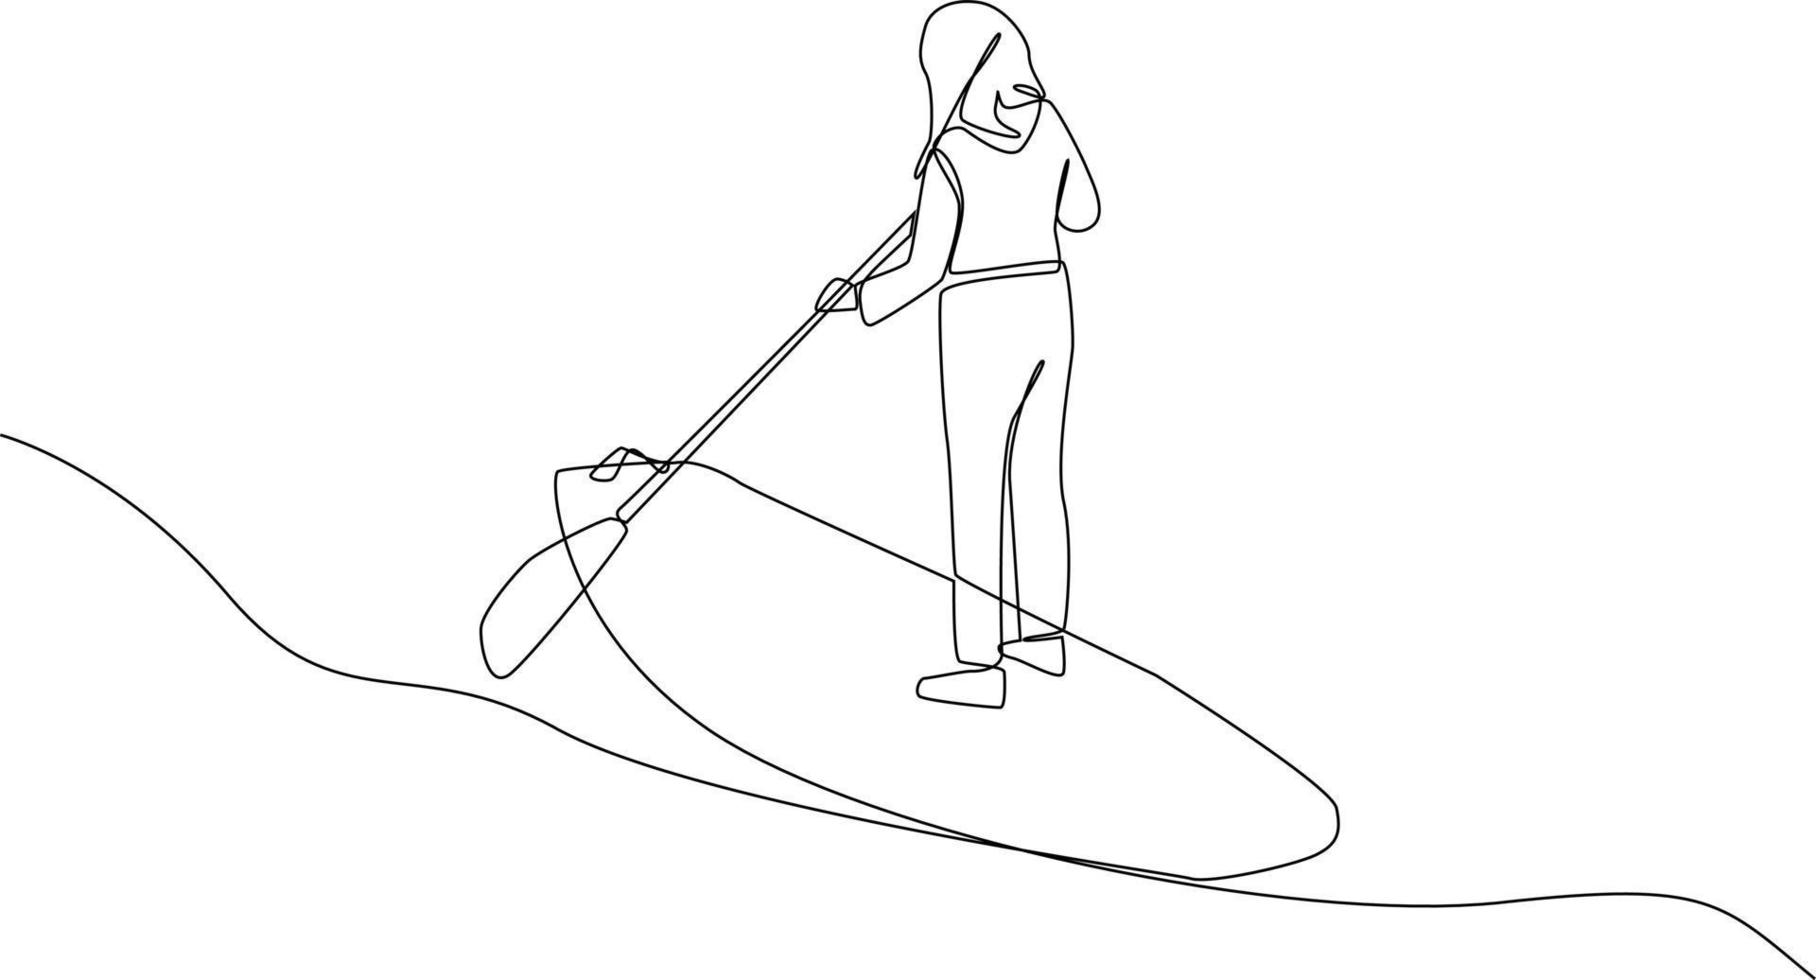 doorlopend een lijn tekening meisje is surfboard peddelen in de meer. ervaringsgericht in reiziger concept. single lijn tekening ontwerp grafisch vector illustratie